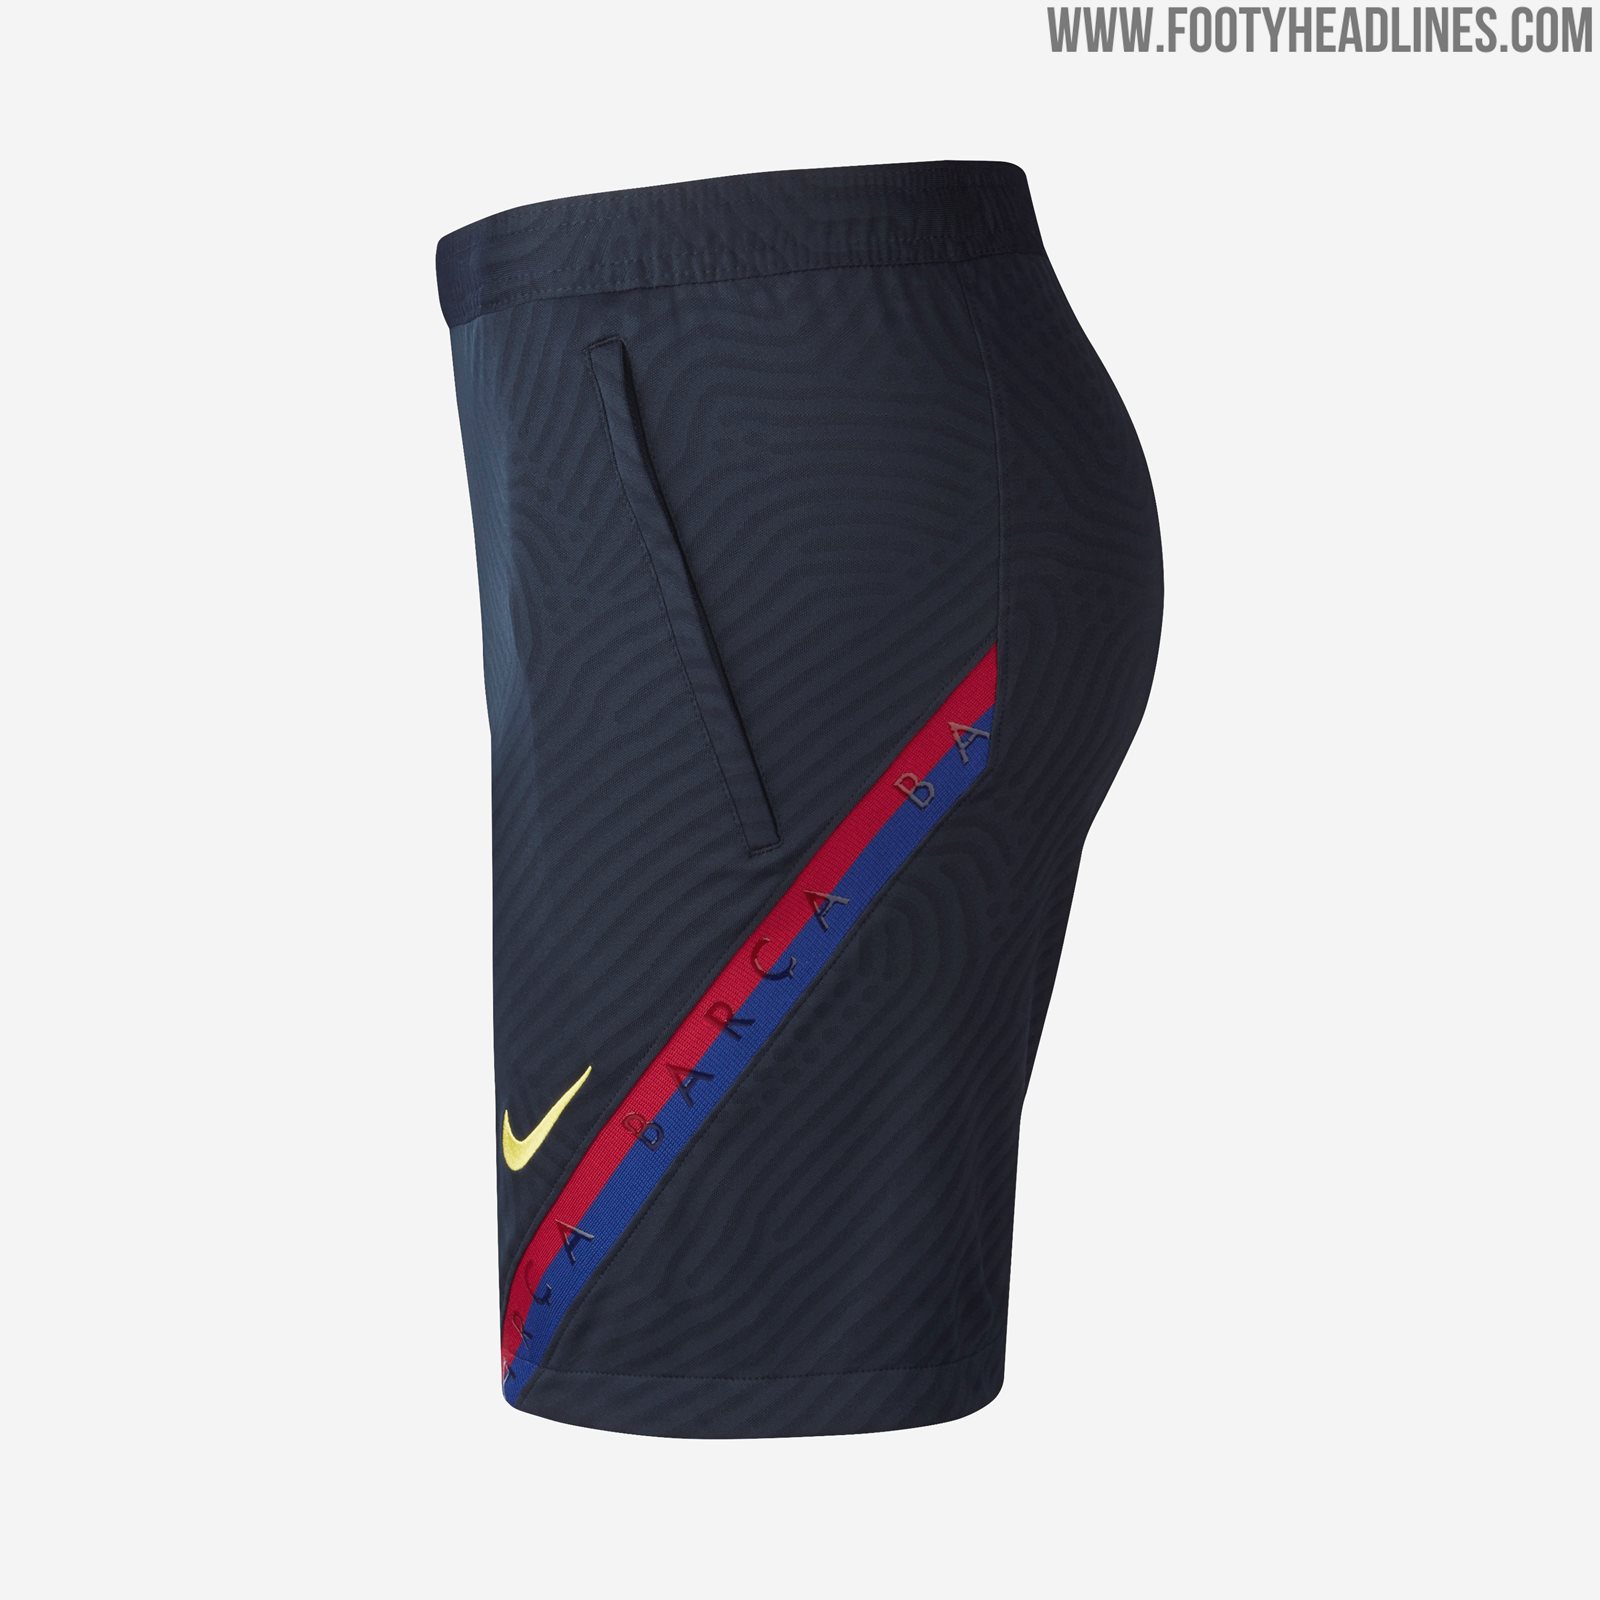 NextGen VaporKnit: FC Barcelona 2020 Training Kit Released - Footy ...